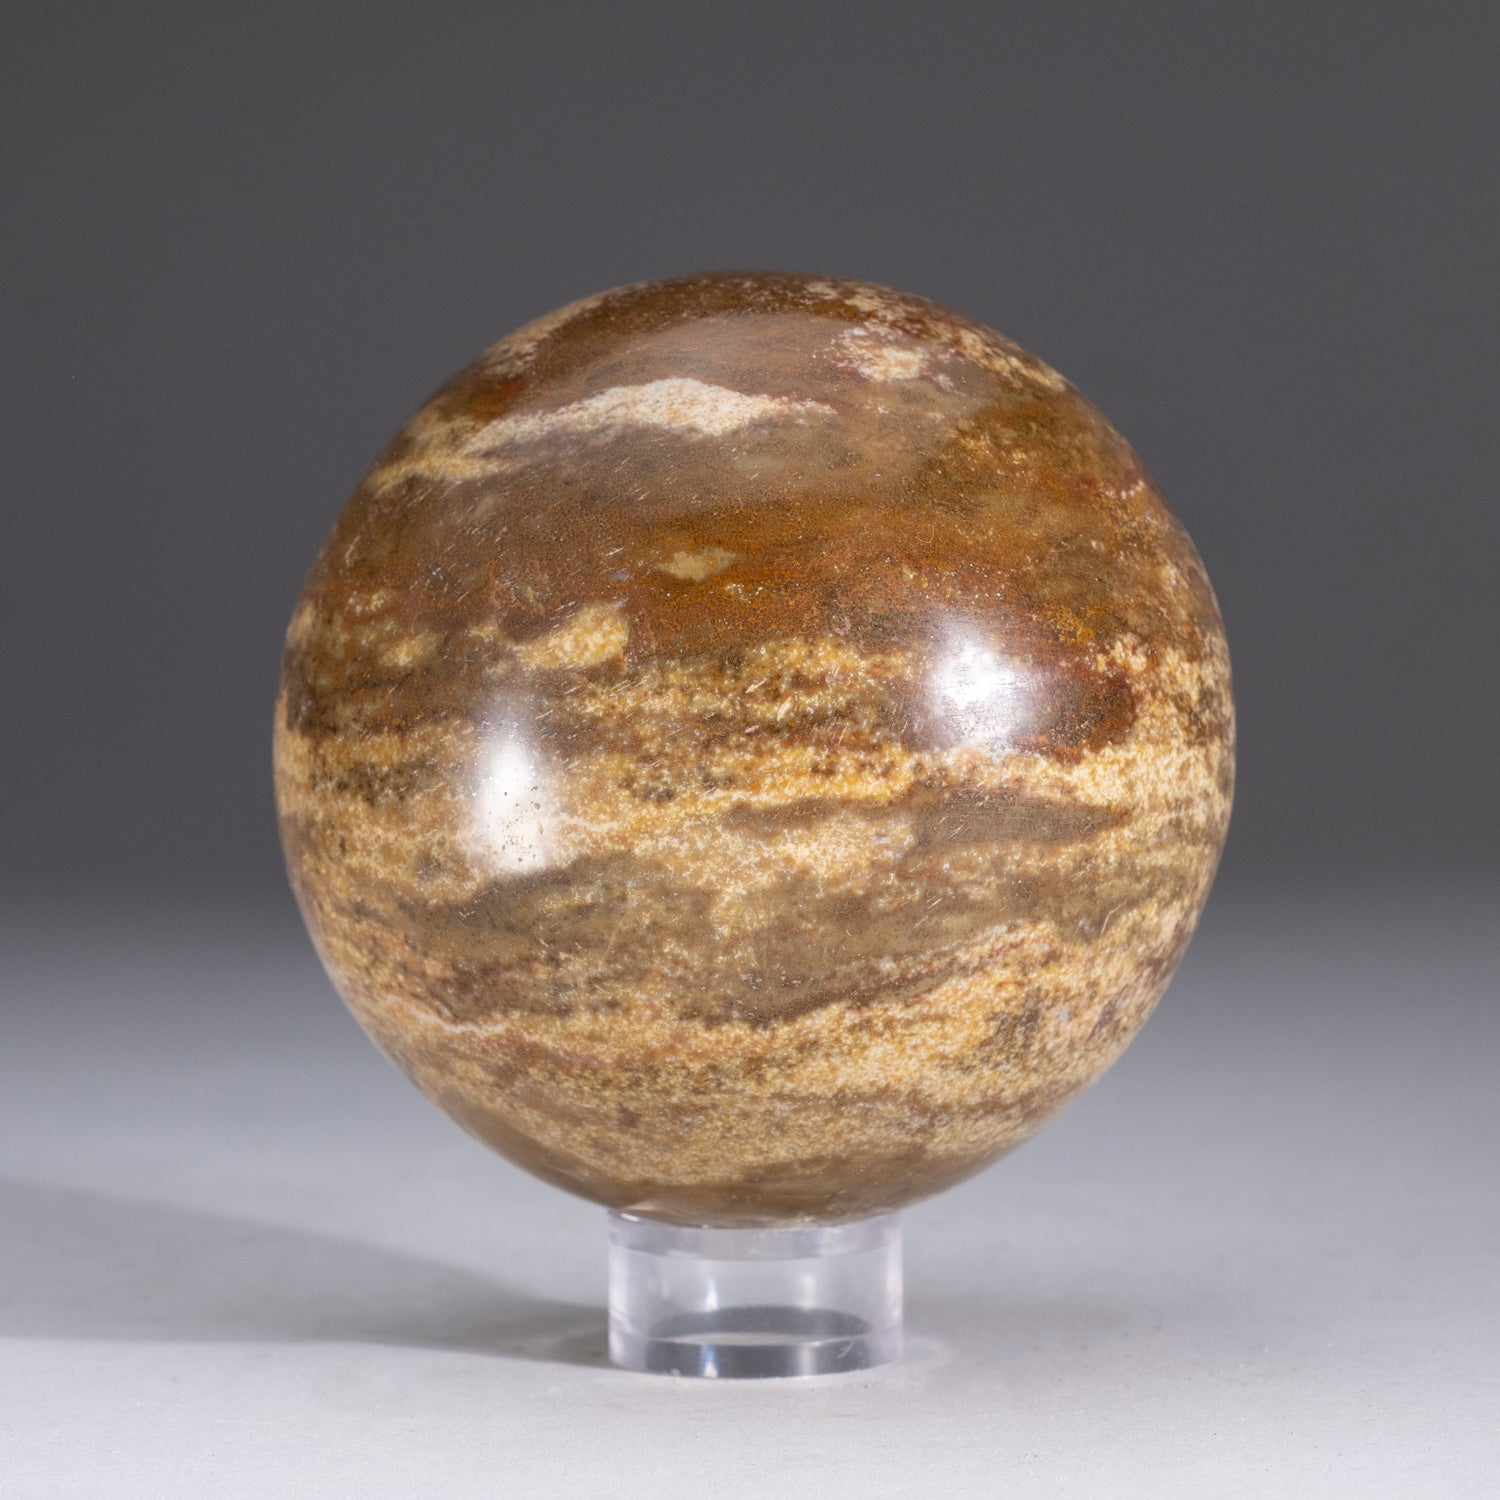 Genuine Polished Ocean Jasper Sphere (1.6 lbs)